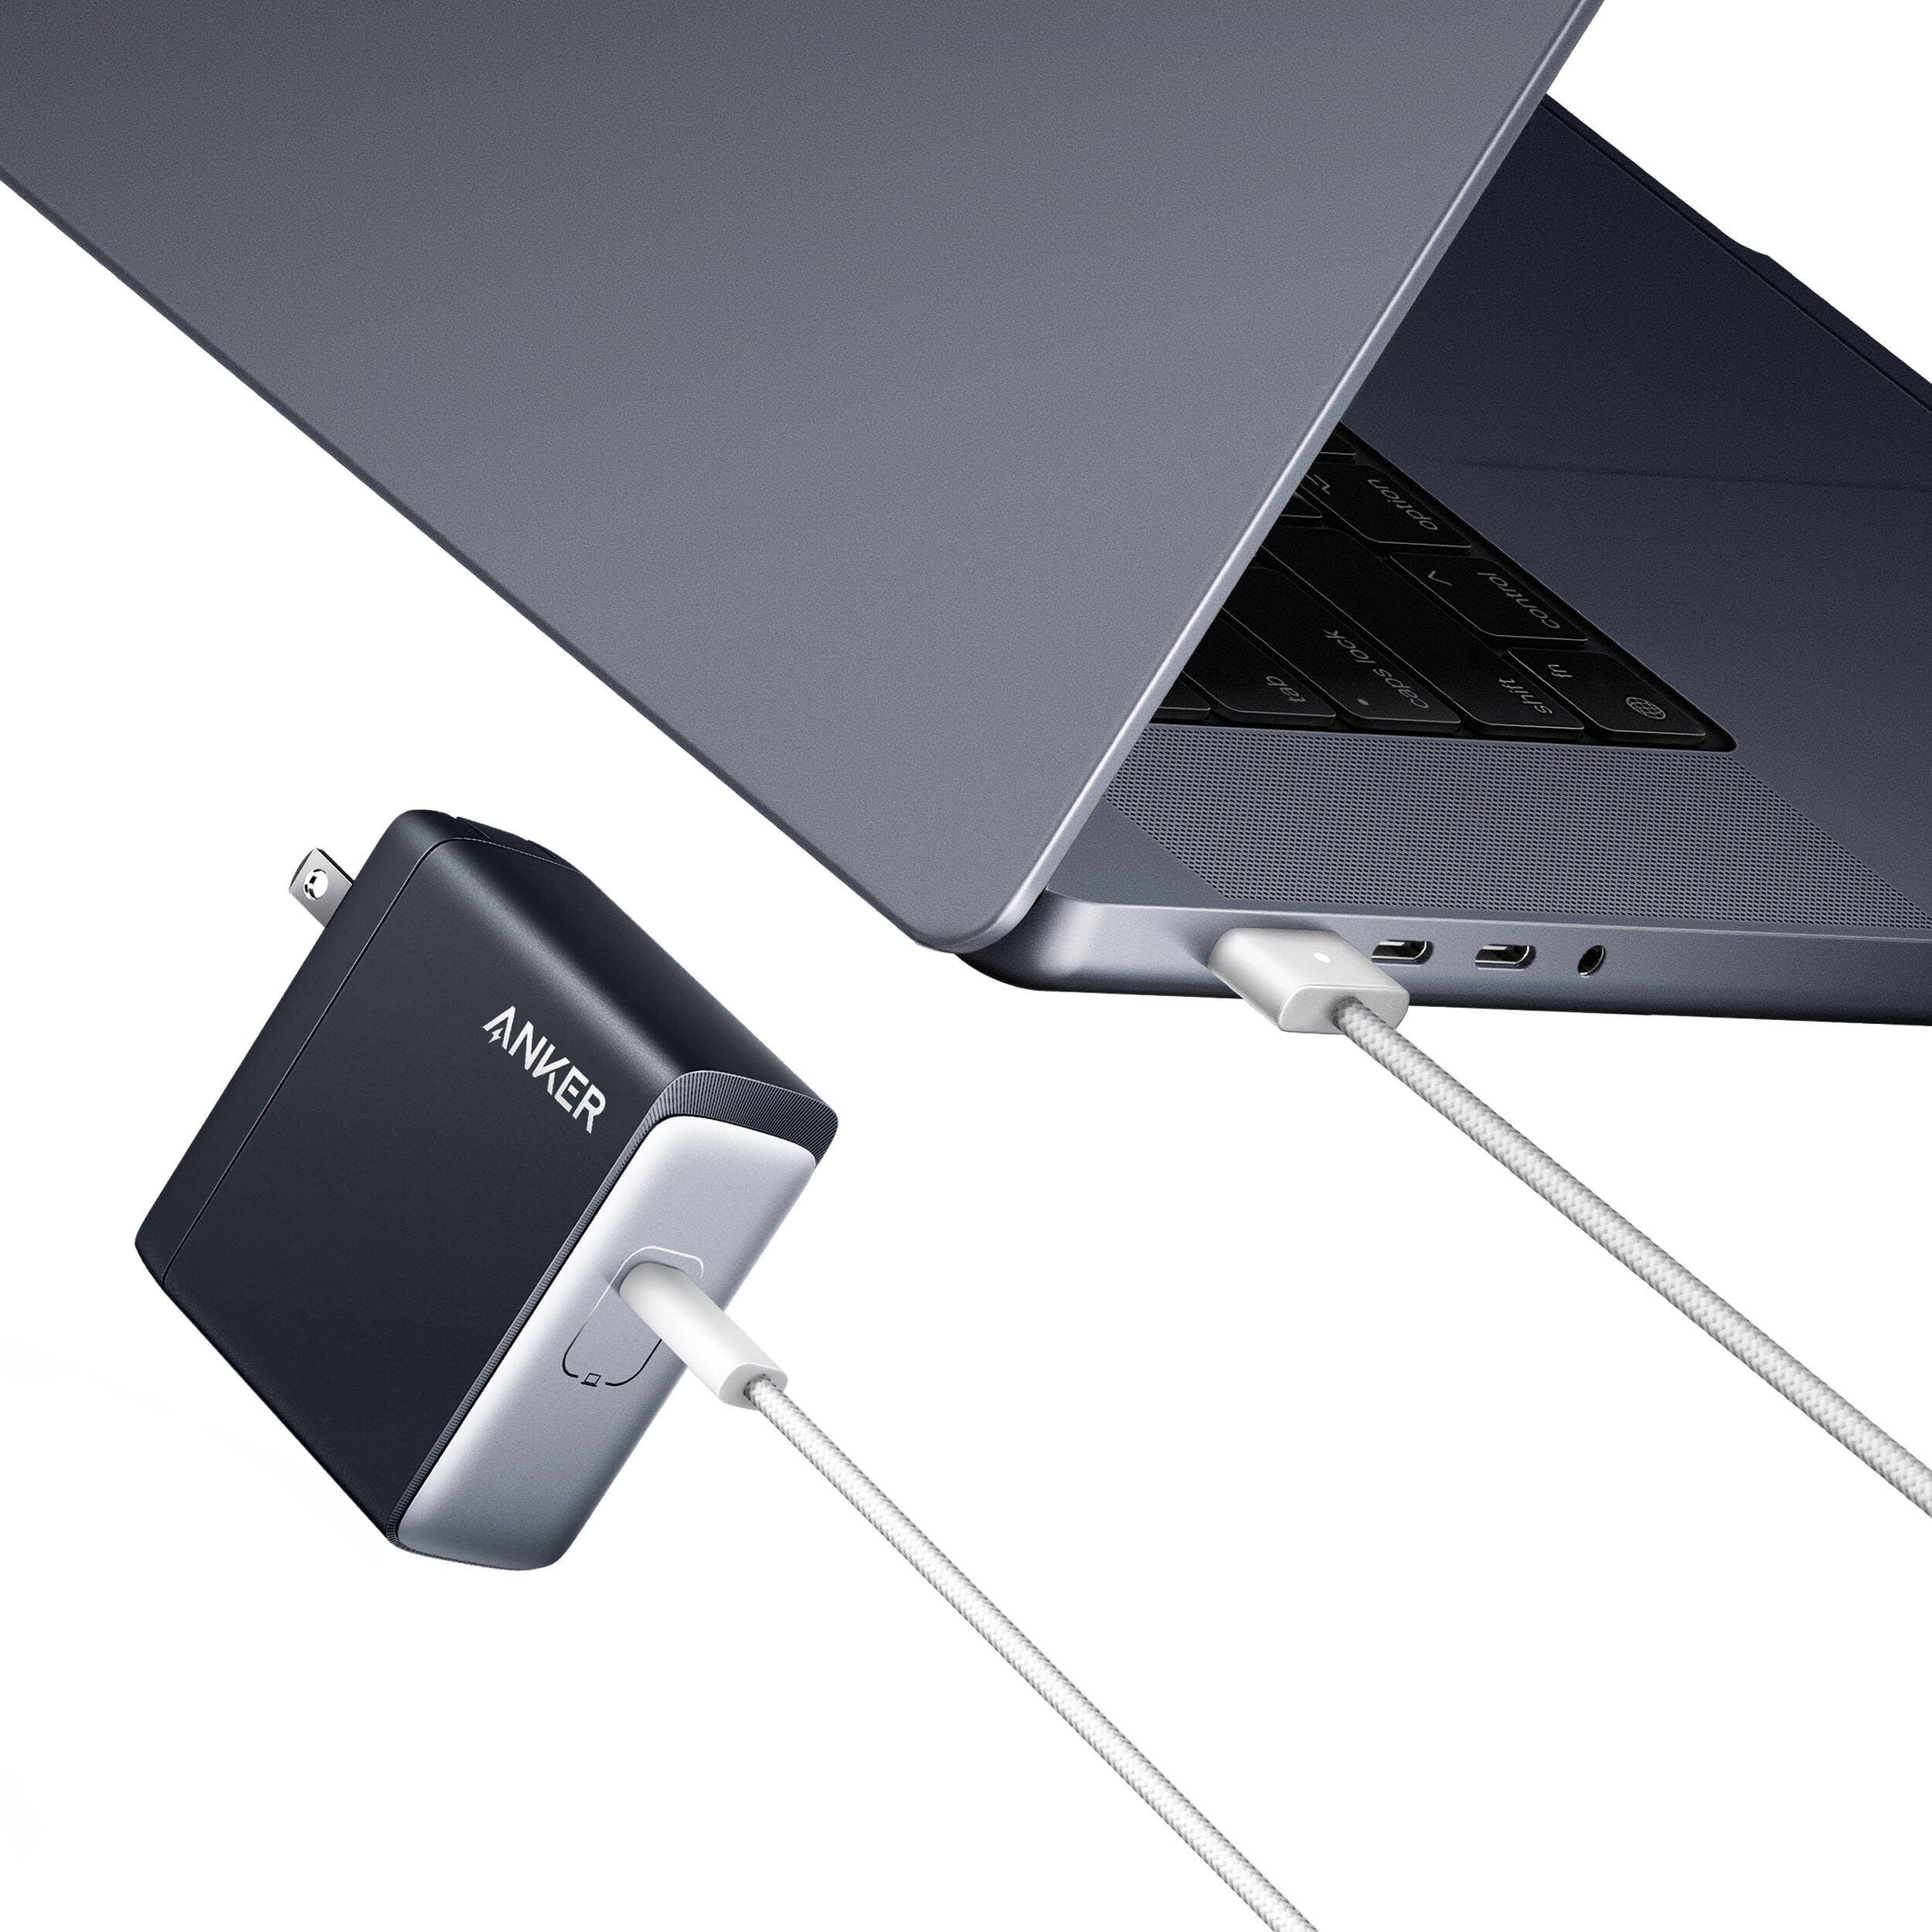 Anker lance une batterie externe capable de charger un MacBook à 140 watts  - Les Numériques